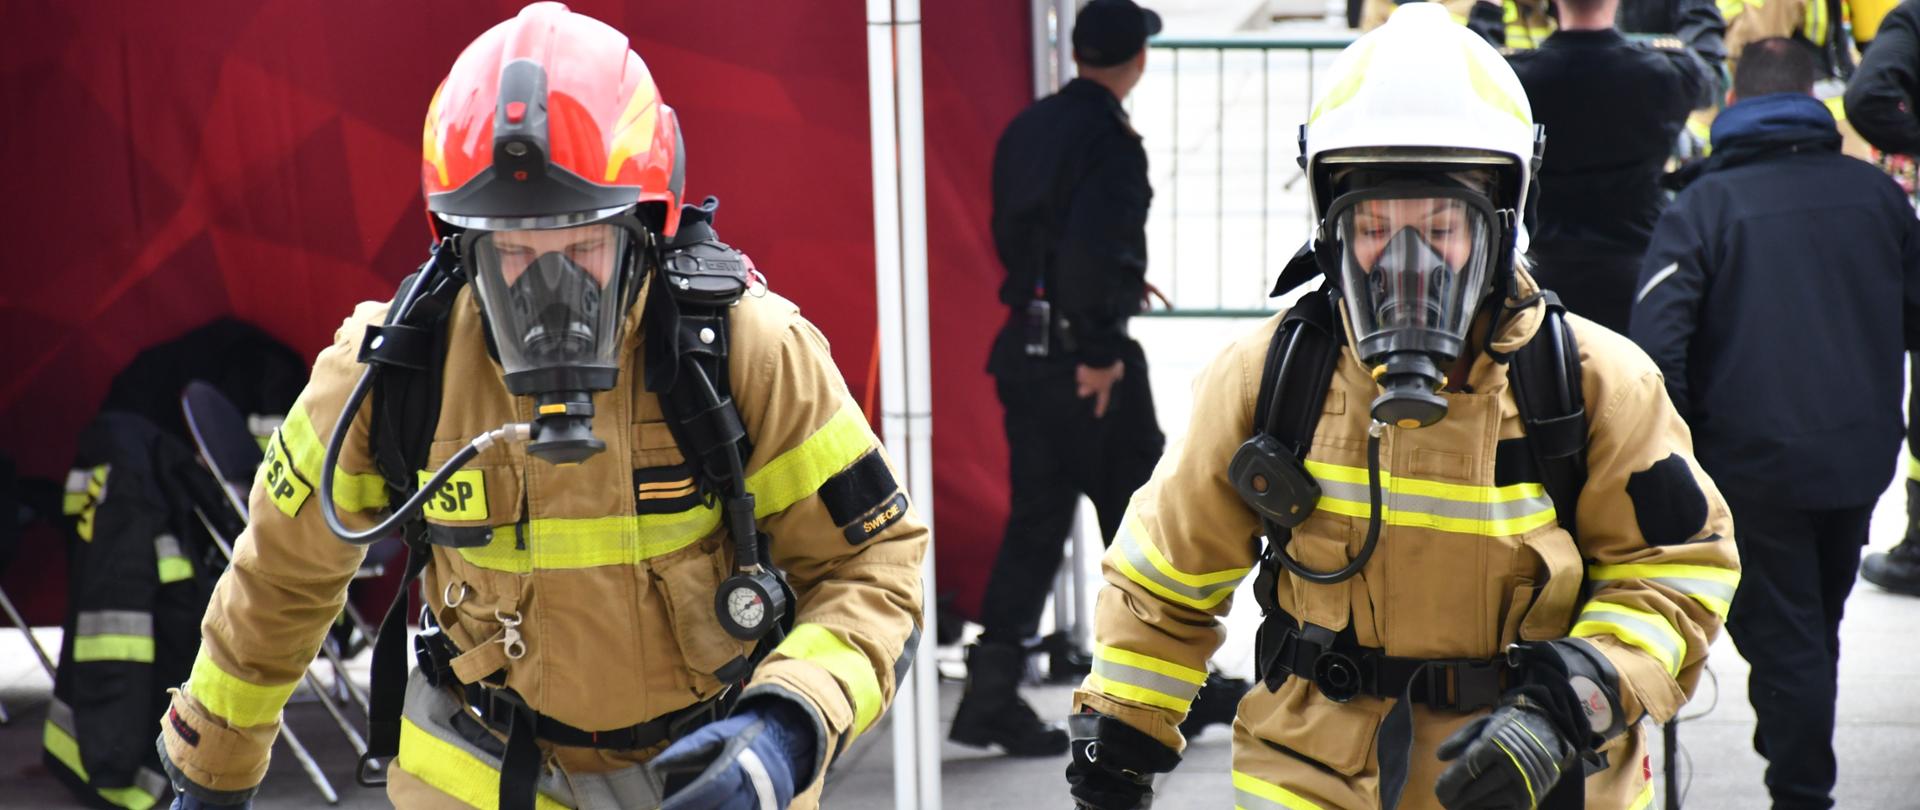 Na zdjęciu widać strażaków w ubraniu bojowym przed wejściem do PKIN ubranych w mundur bojowy w hełmach i aparatach OUO